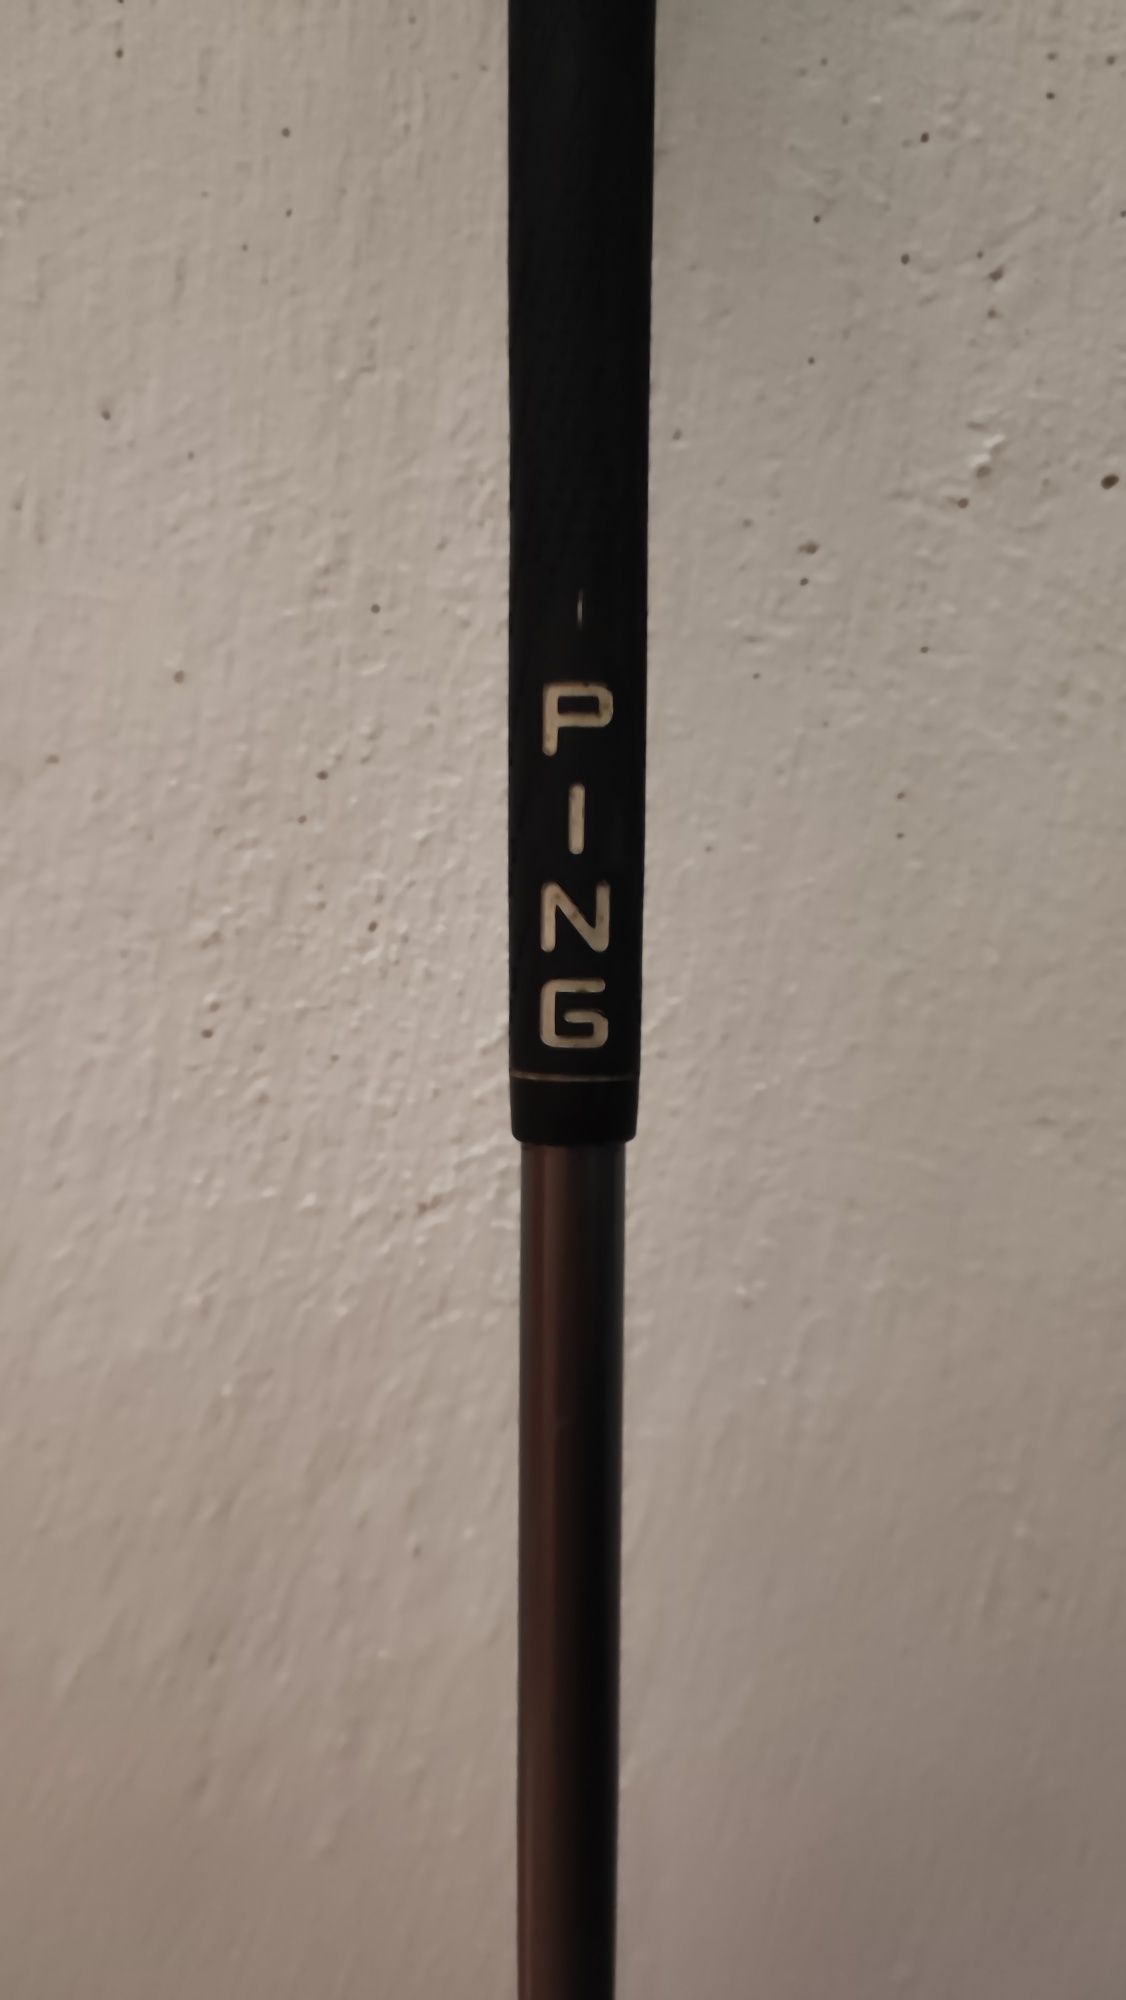 Taco de golf drive Ping S i3